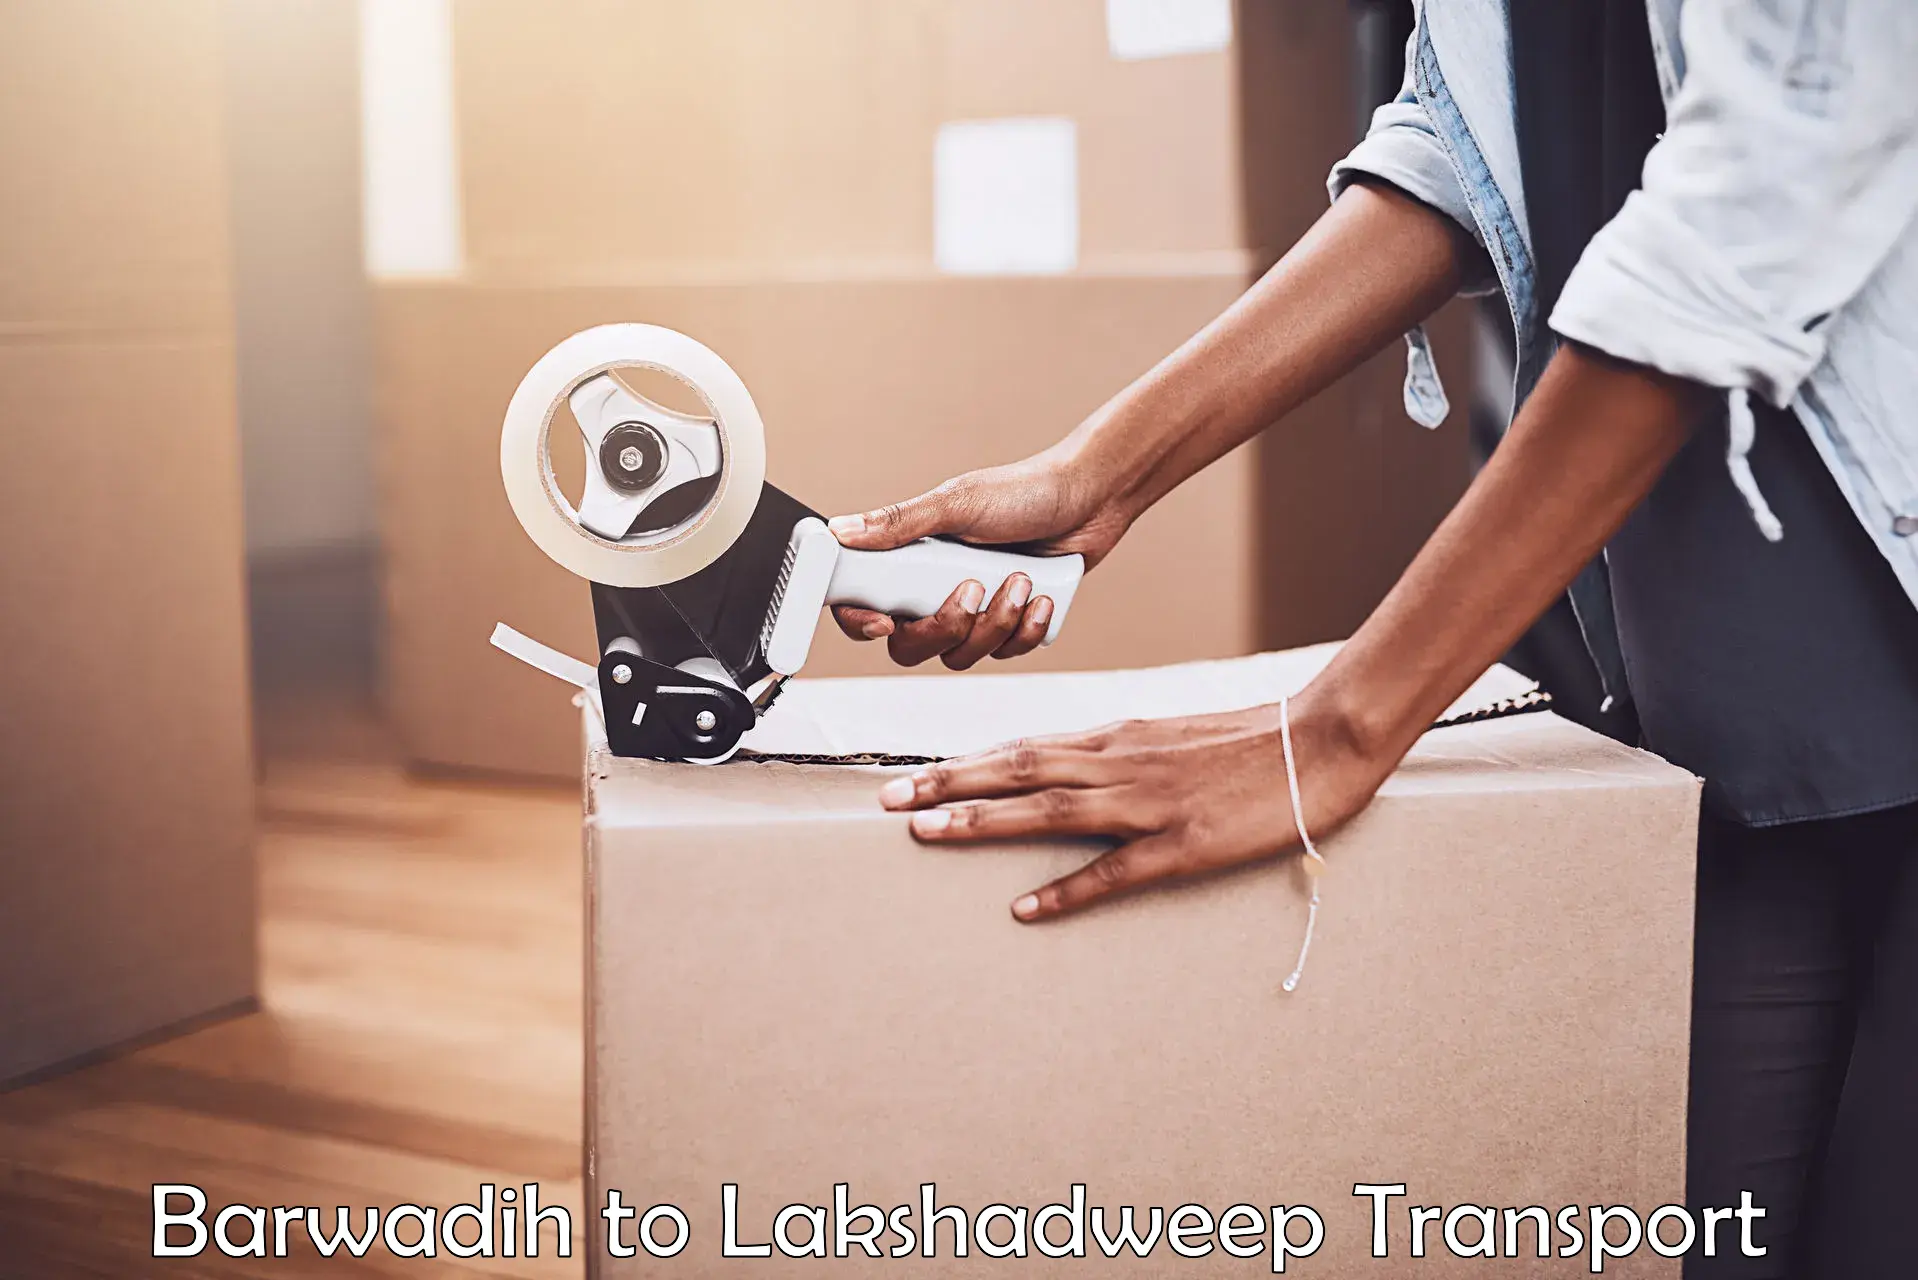 Express transport services Barwadih to Lakshadweep